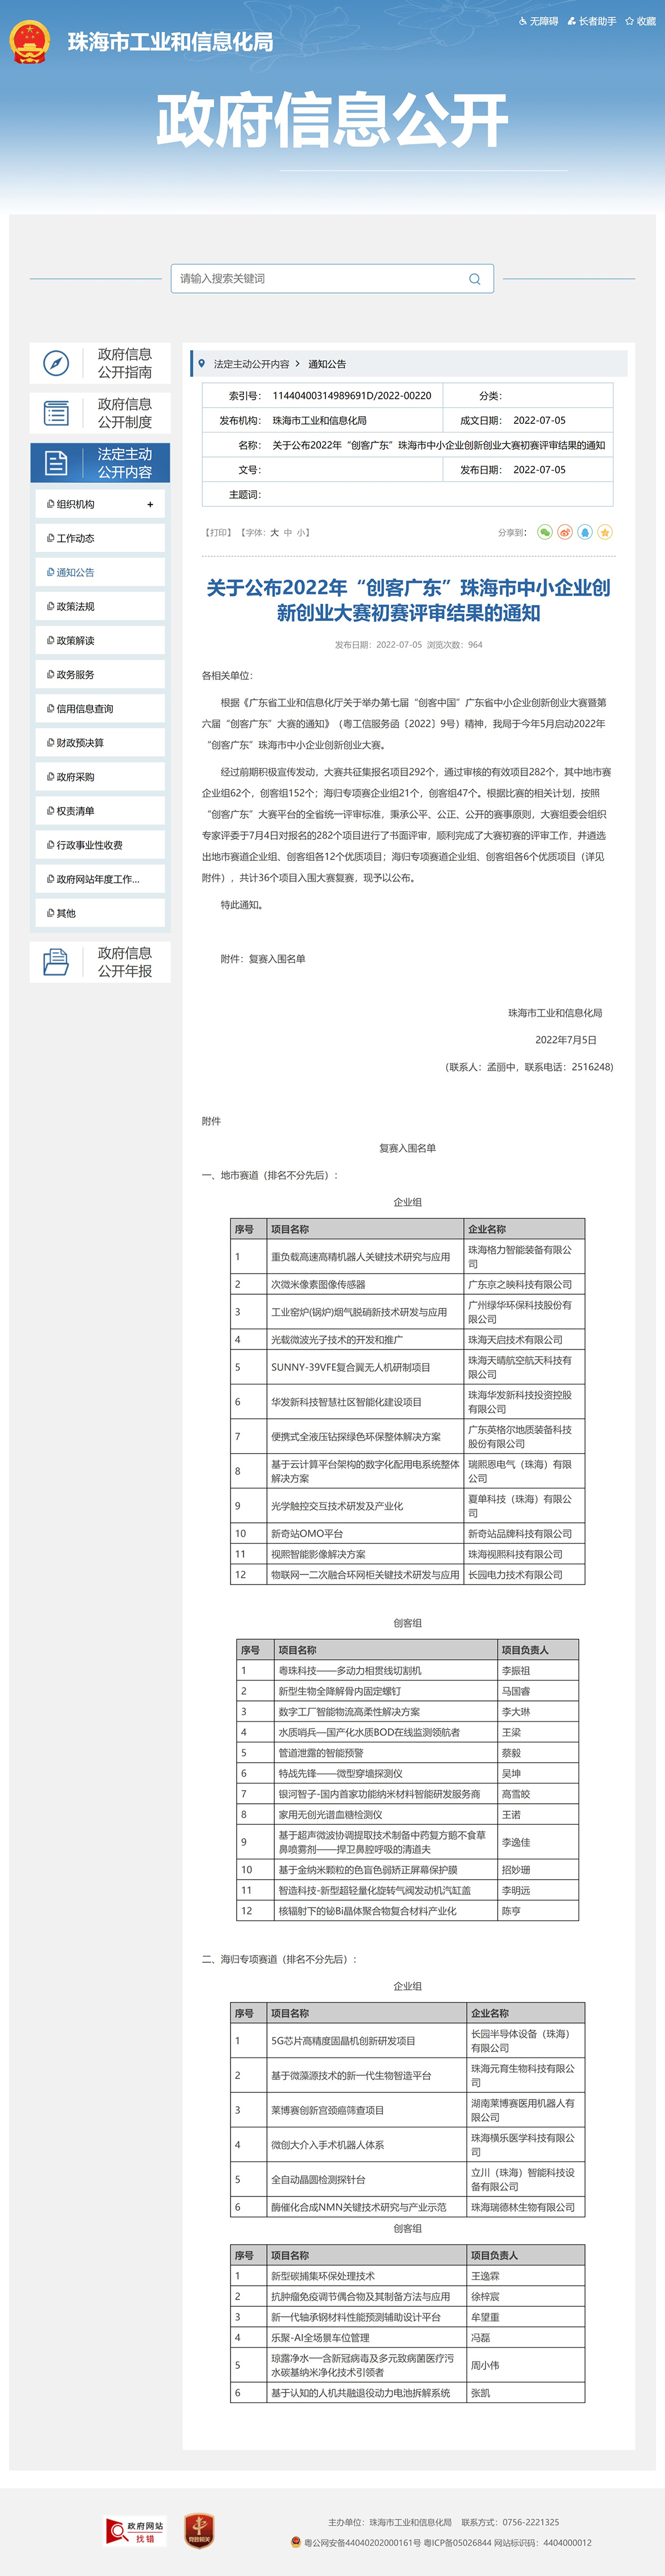 20220712163816网页捕获_12-7-2022_162919_www.zhuhai.gov.cn.jpeg